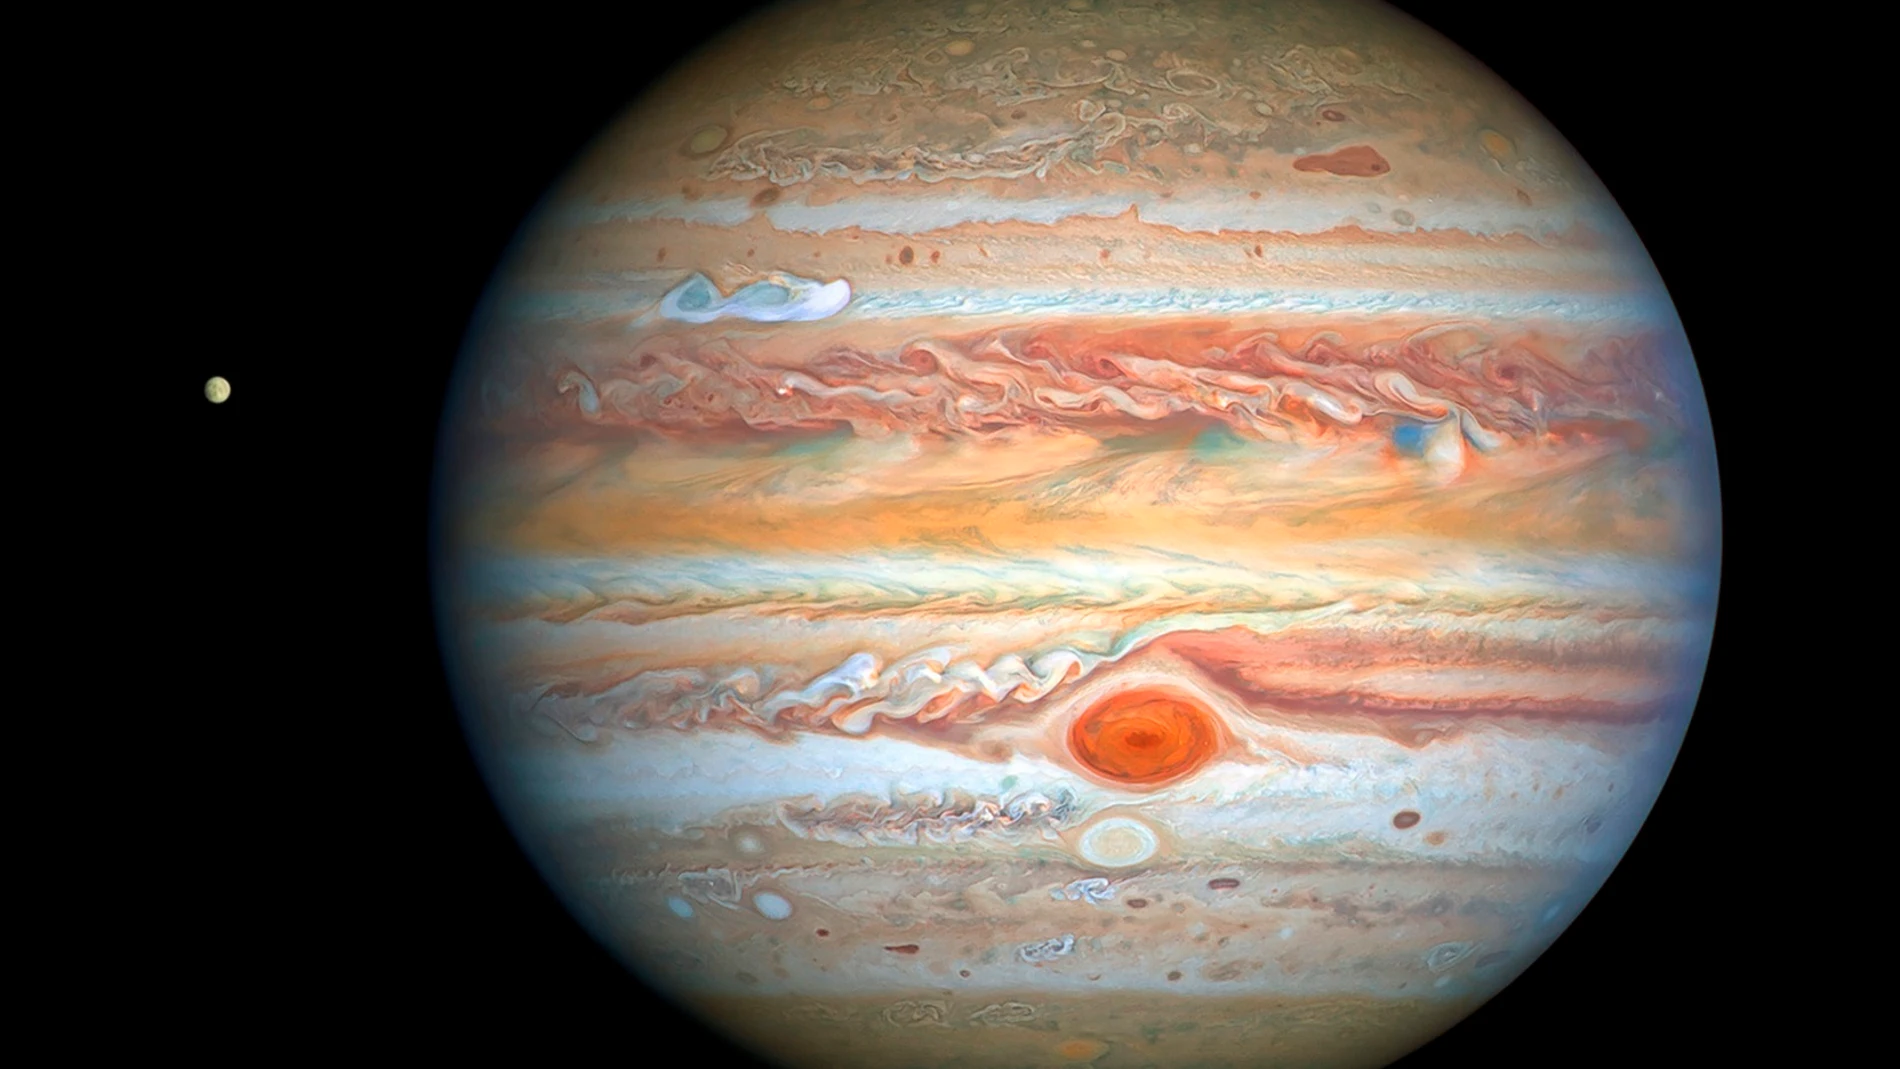 Imagen de Júpiter captada por el Telescopio Hubble